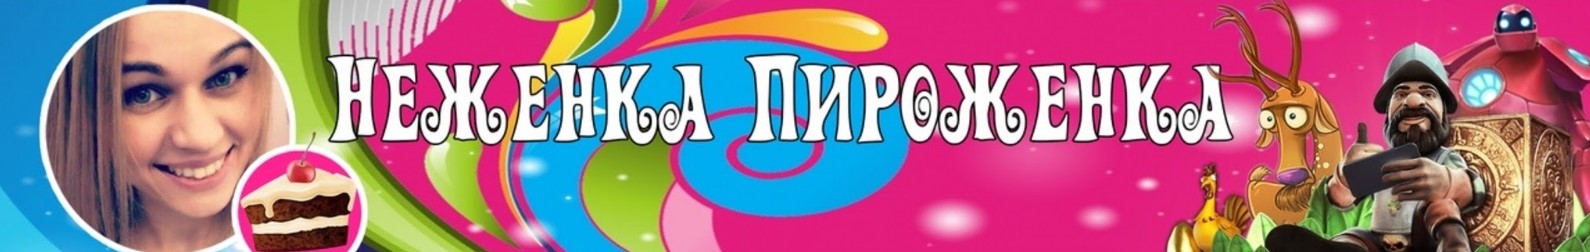 Неженка Пироженка Streams - YouTube - Opera 2019-10-18 10.08.39.jpg